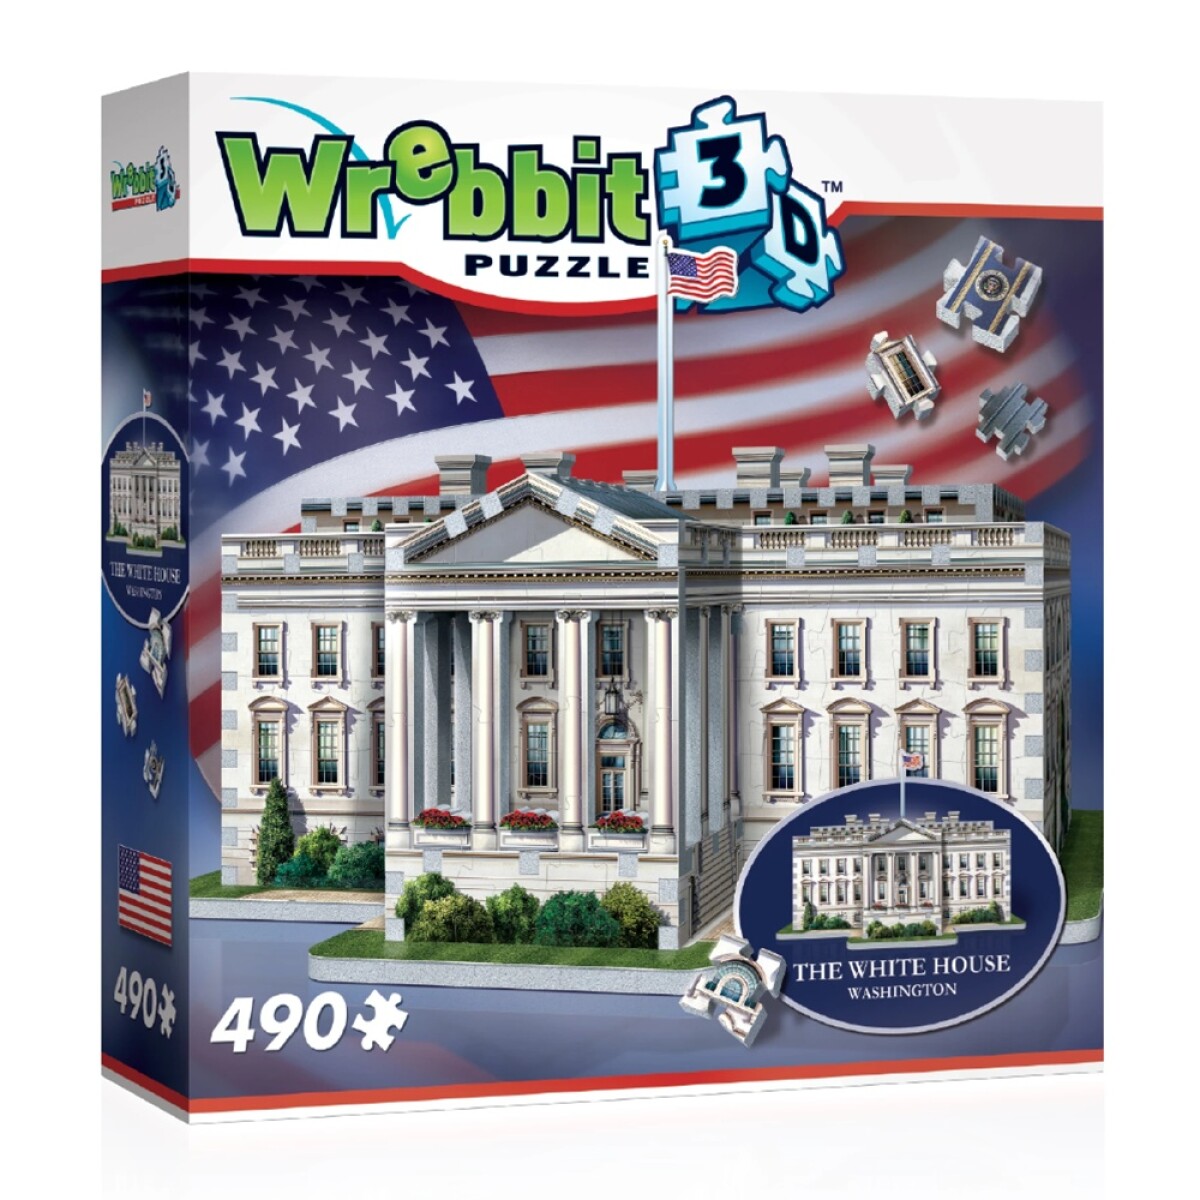 Puzzle 3D Maqueta de La Casa Blanca Washington DC 490 Piezas - Multicolor 